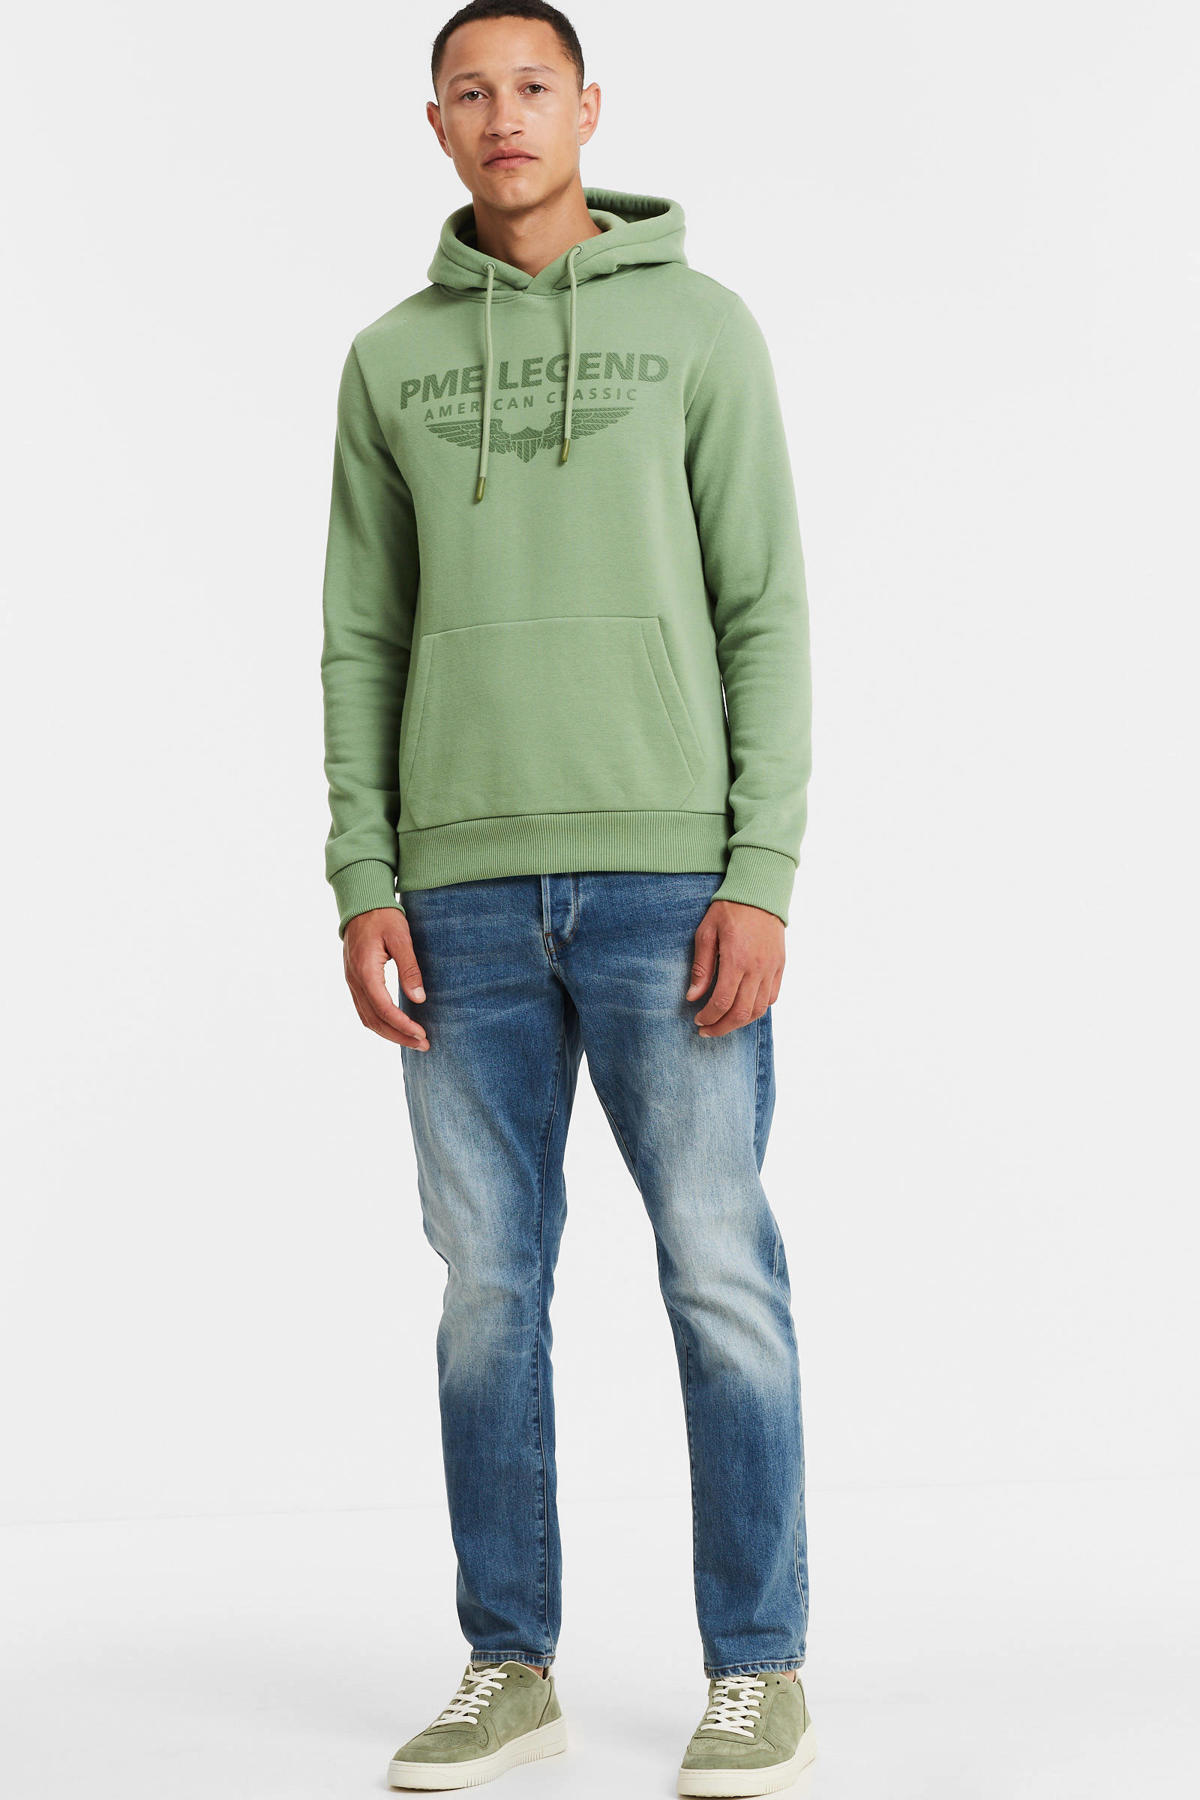 beha Ijsbeer Bengelen PME Legend hoodie met logo 6192 hedge green | wehkamp